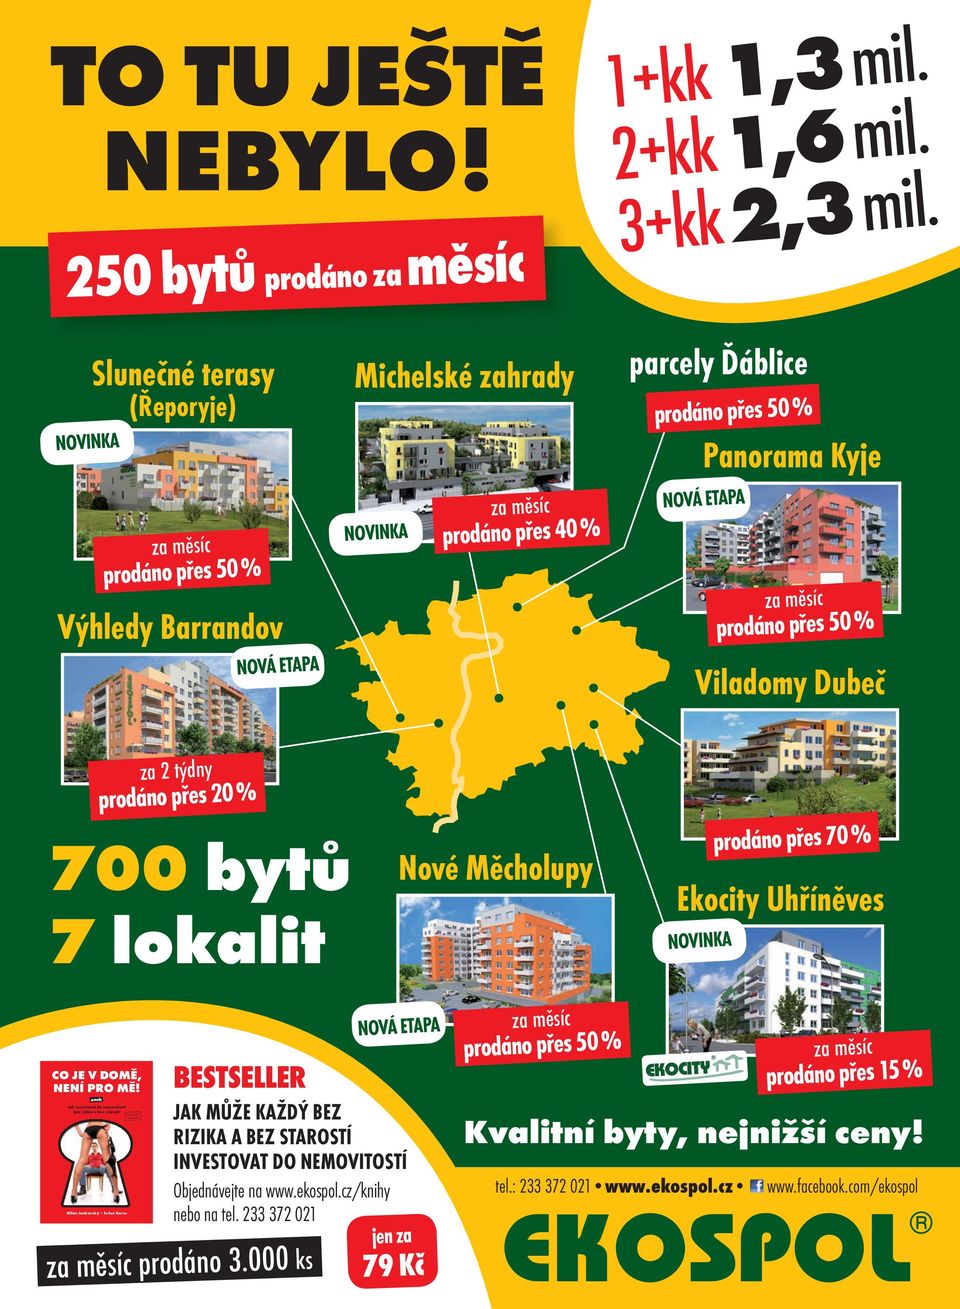 ETAPA za měsíc prodáno přes 50 % Viladomy Dubeč za 2 týdny prodáno přes 20 % 700 bytů 7 lokalit Nové Měcholupy prodáno přes 70 % Ekocity Uhříněves NOVINKA CO JE V DOMĚ, NENÍ PRO MĚ!